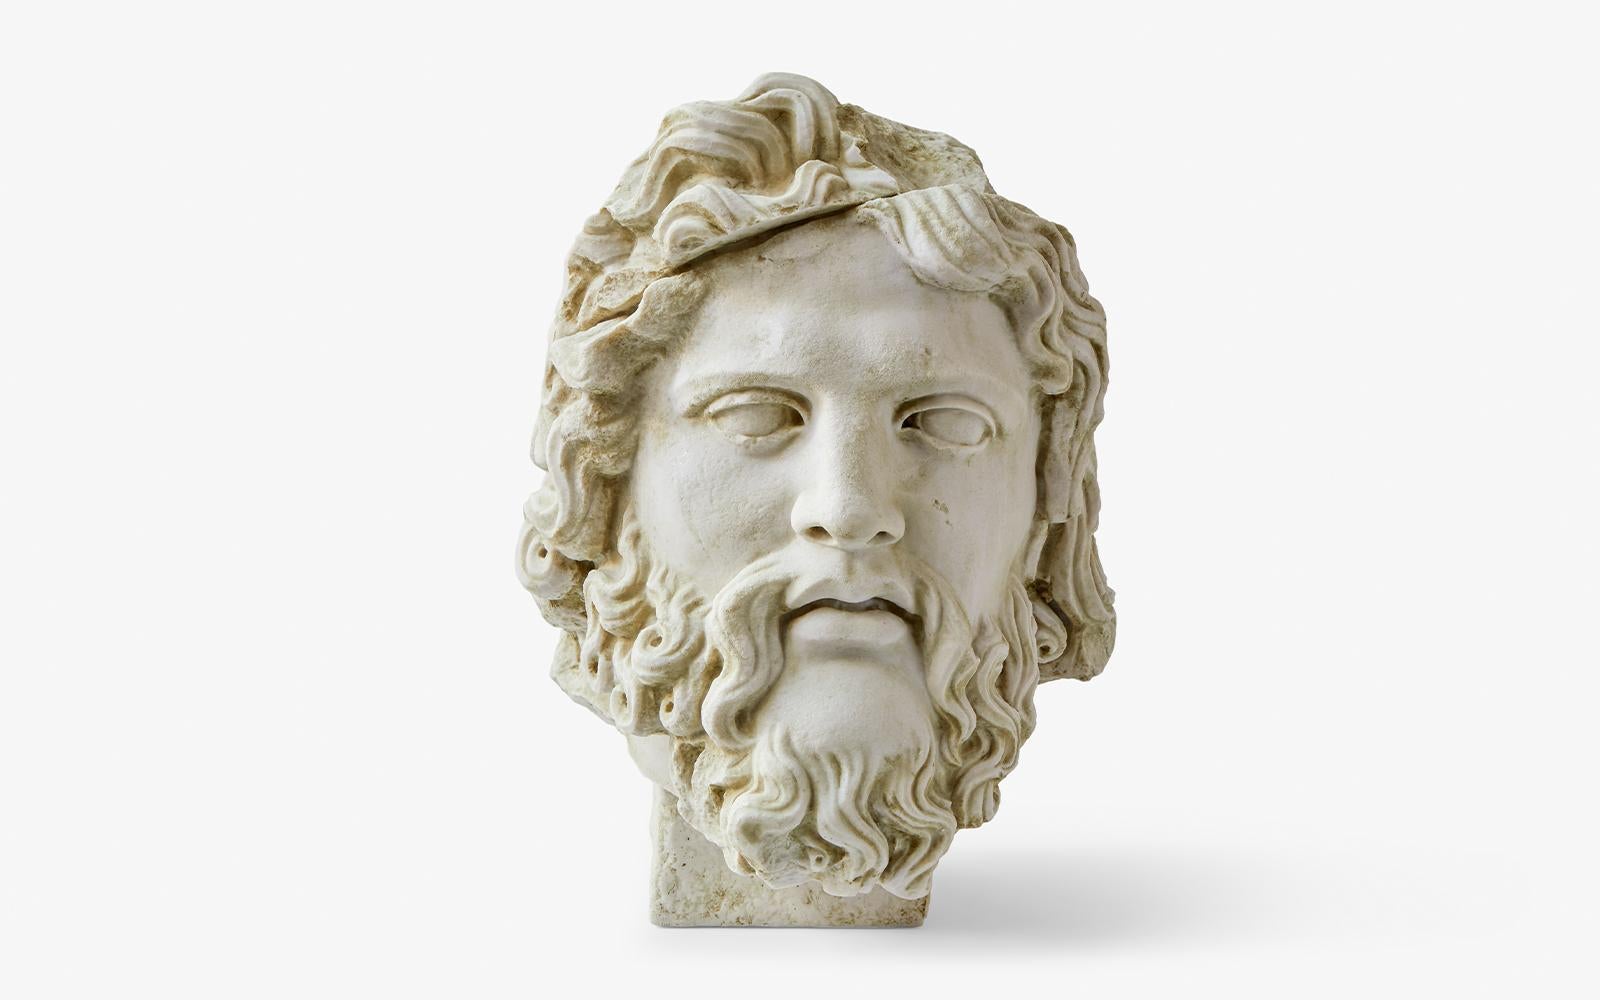 Sculpture du buste de Zeus par Lagu
Conçu par Ufuk Ceylan
Dimensions : L 30 x P 40 x H 43 cm.
Matériaux : Marbre statuaire, coulé.

Zeus est connu comme le père des dieux et des humains dans la mythologie grecque. Il est associé à la force, la